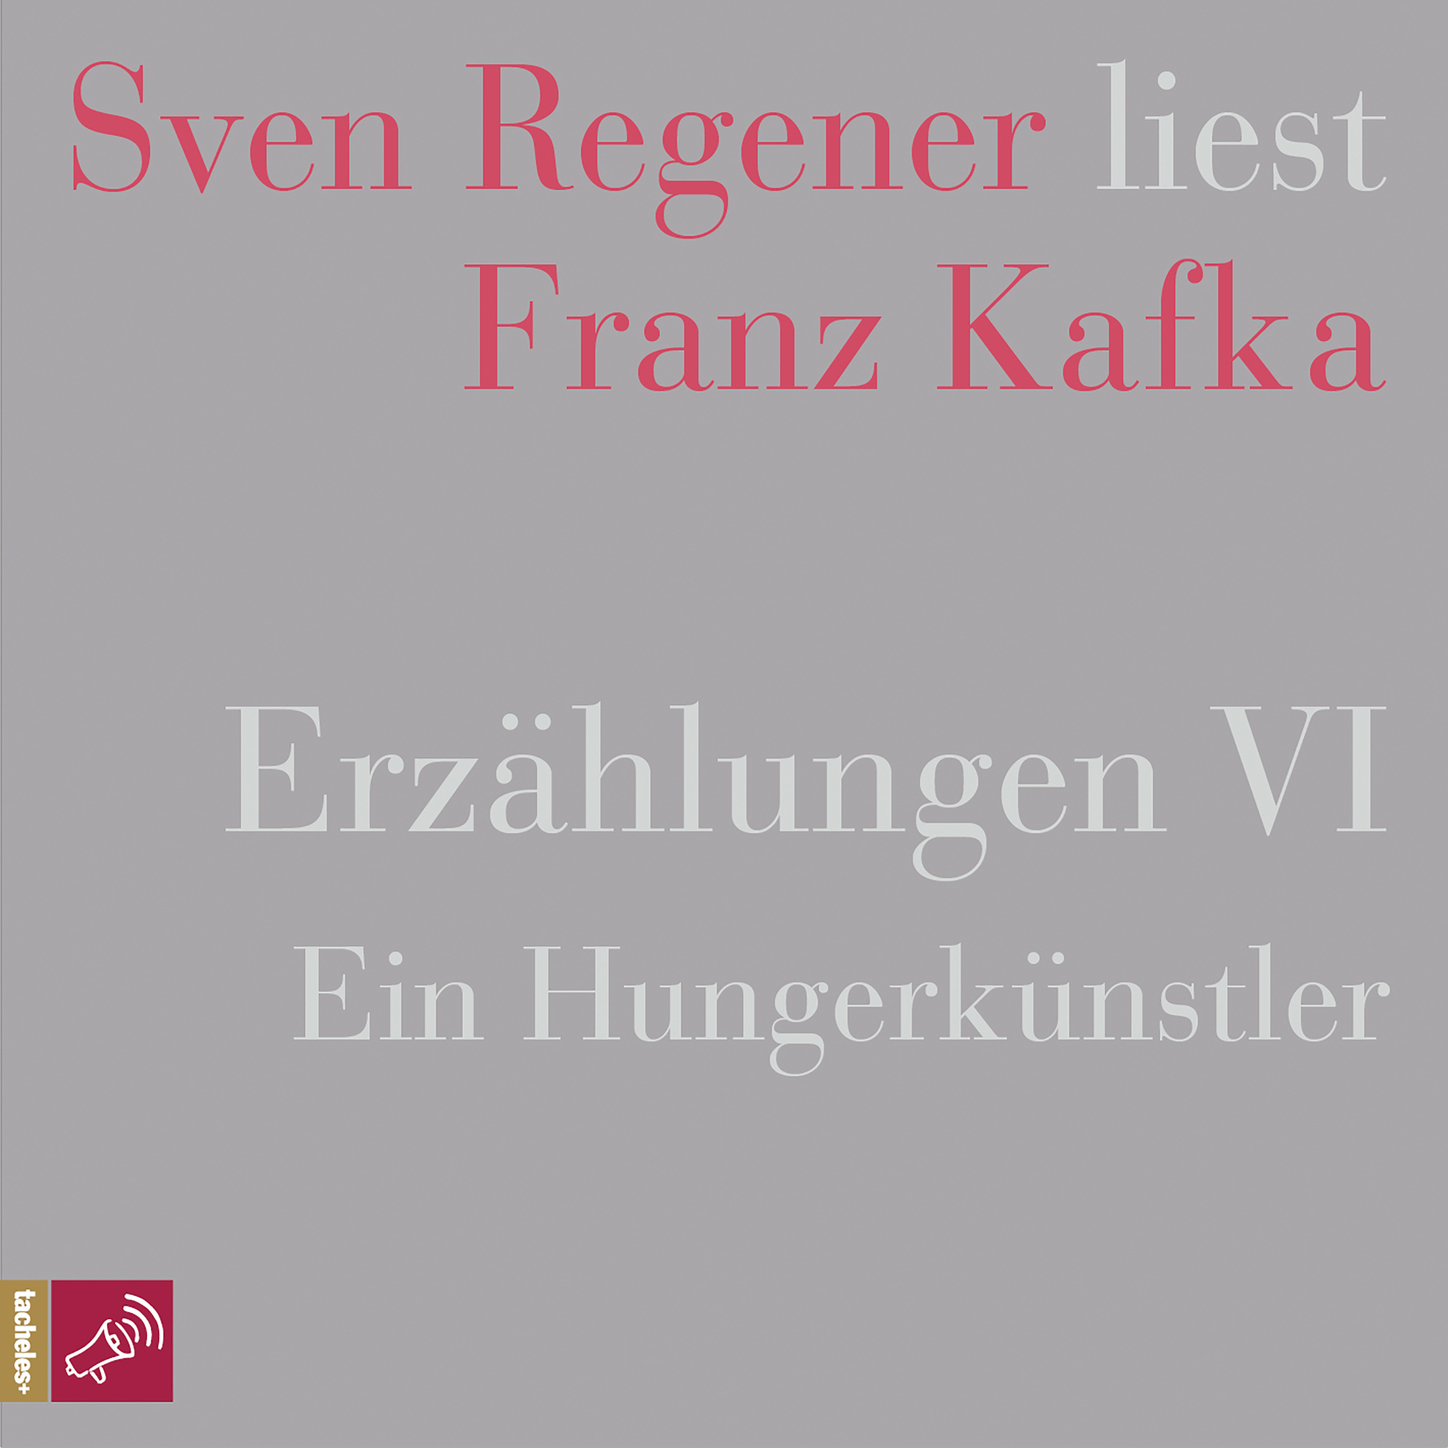 Erzählungen 6 - Ein Hungerkünstler - Sven Regener liest Franz Kafka